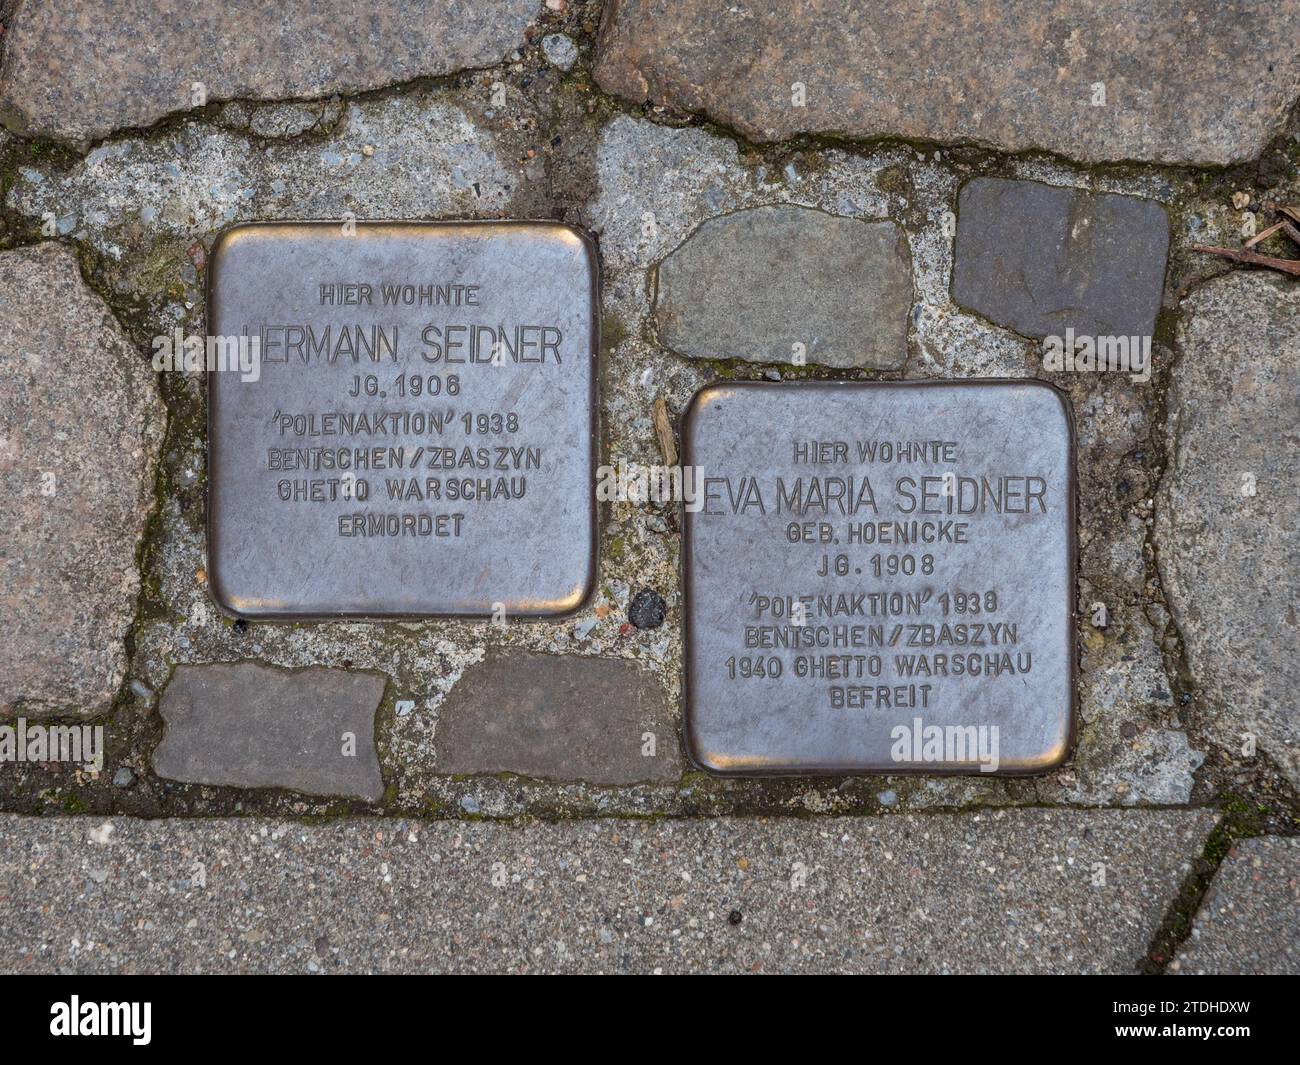 Una coppia di stolipersteine di bronzo (pietre inciampanti) ad Amburgo, Germania. Foto Stock